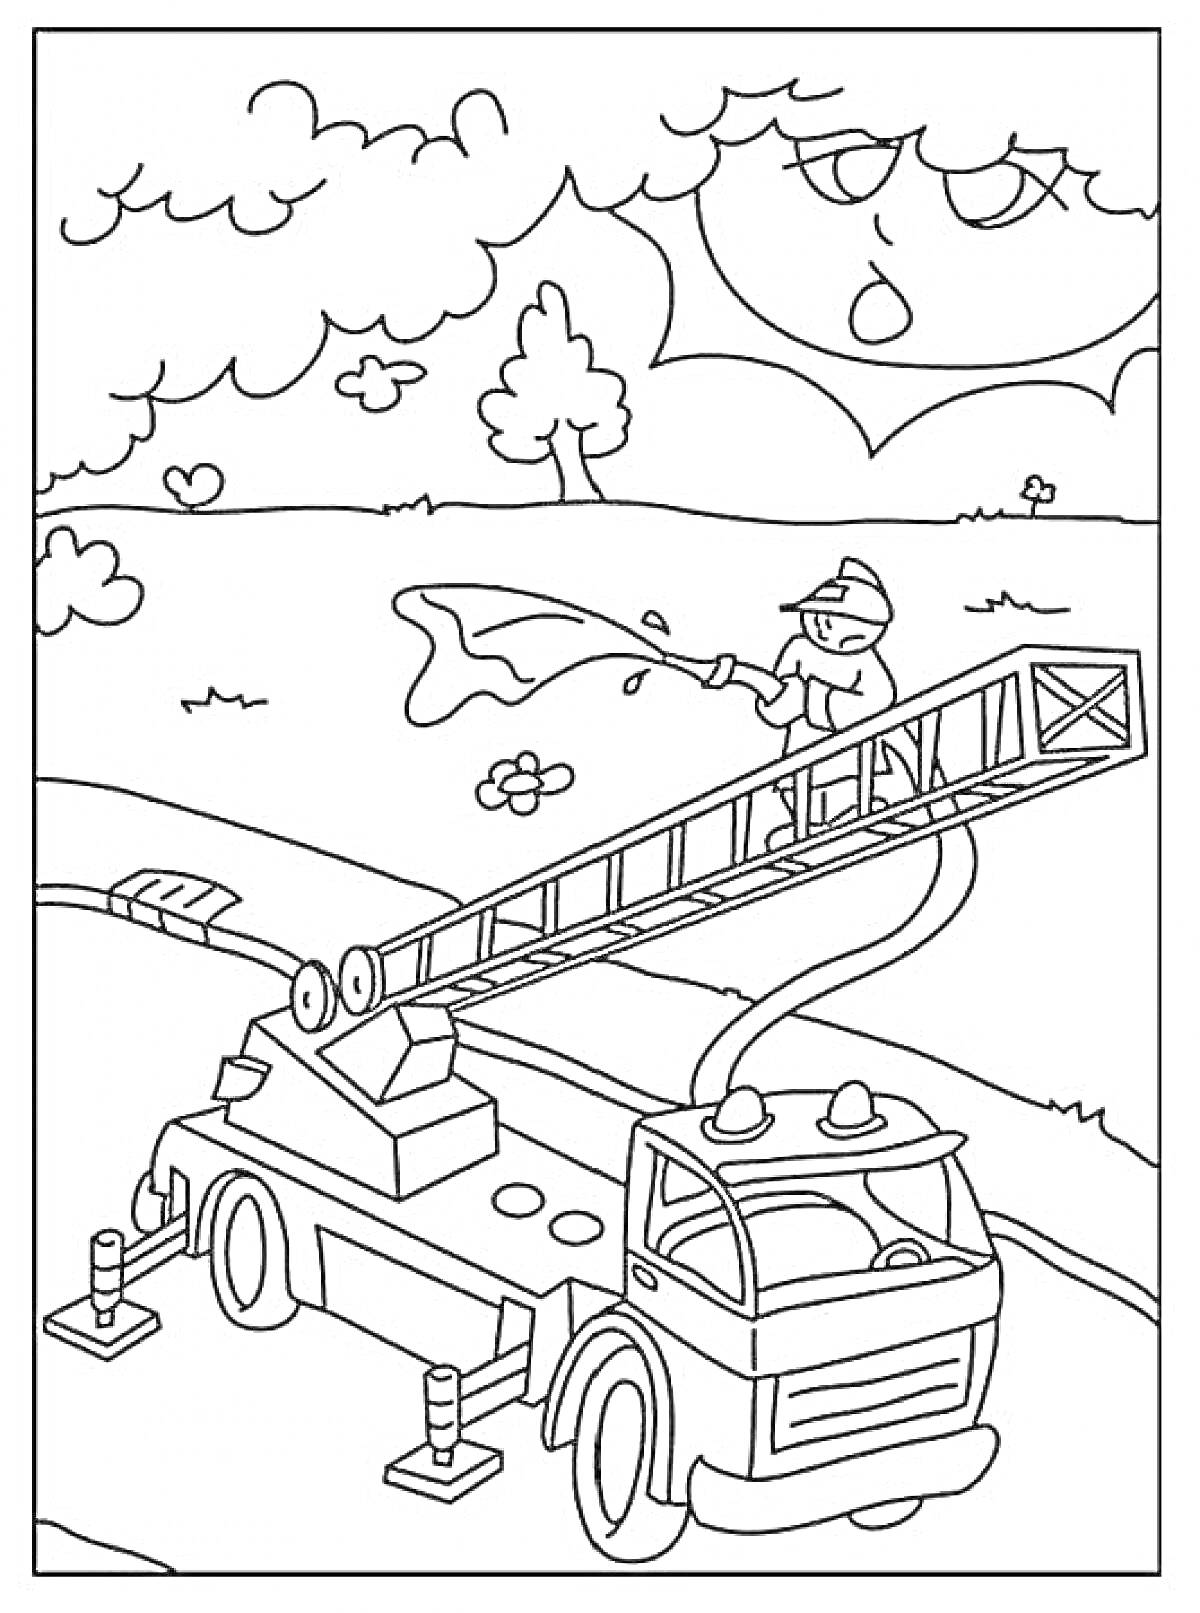 Раскраска Пожарная машина с выдвижной лестницей и пожарный, тушащий огонь, на фоне пейзажа с деревьями и солнцем с облаками